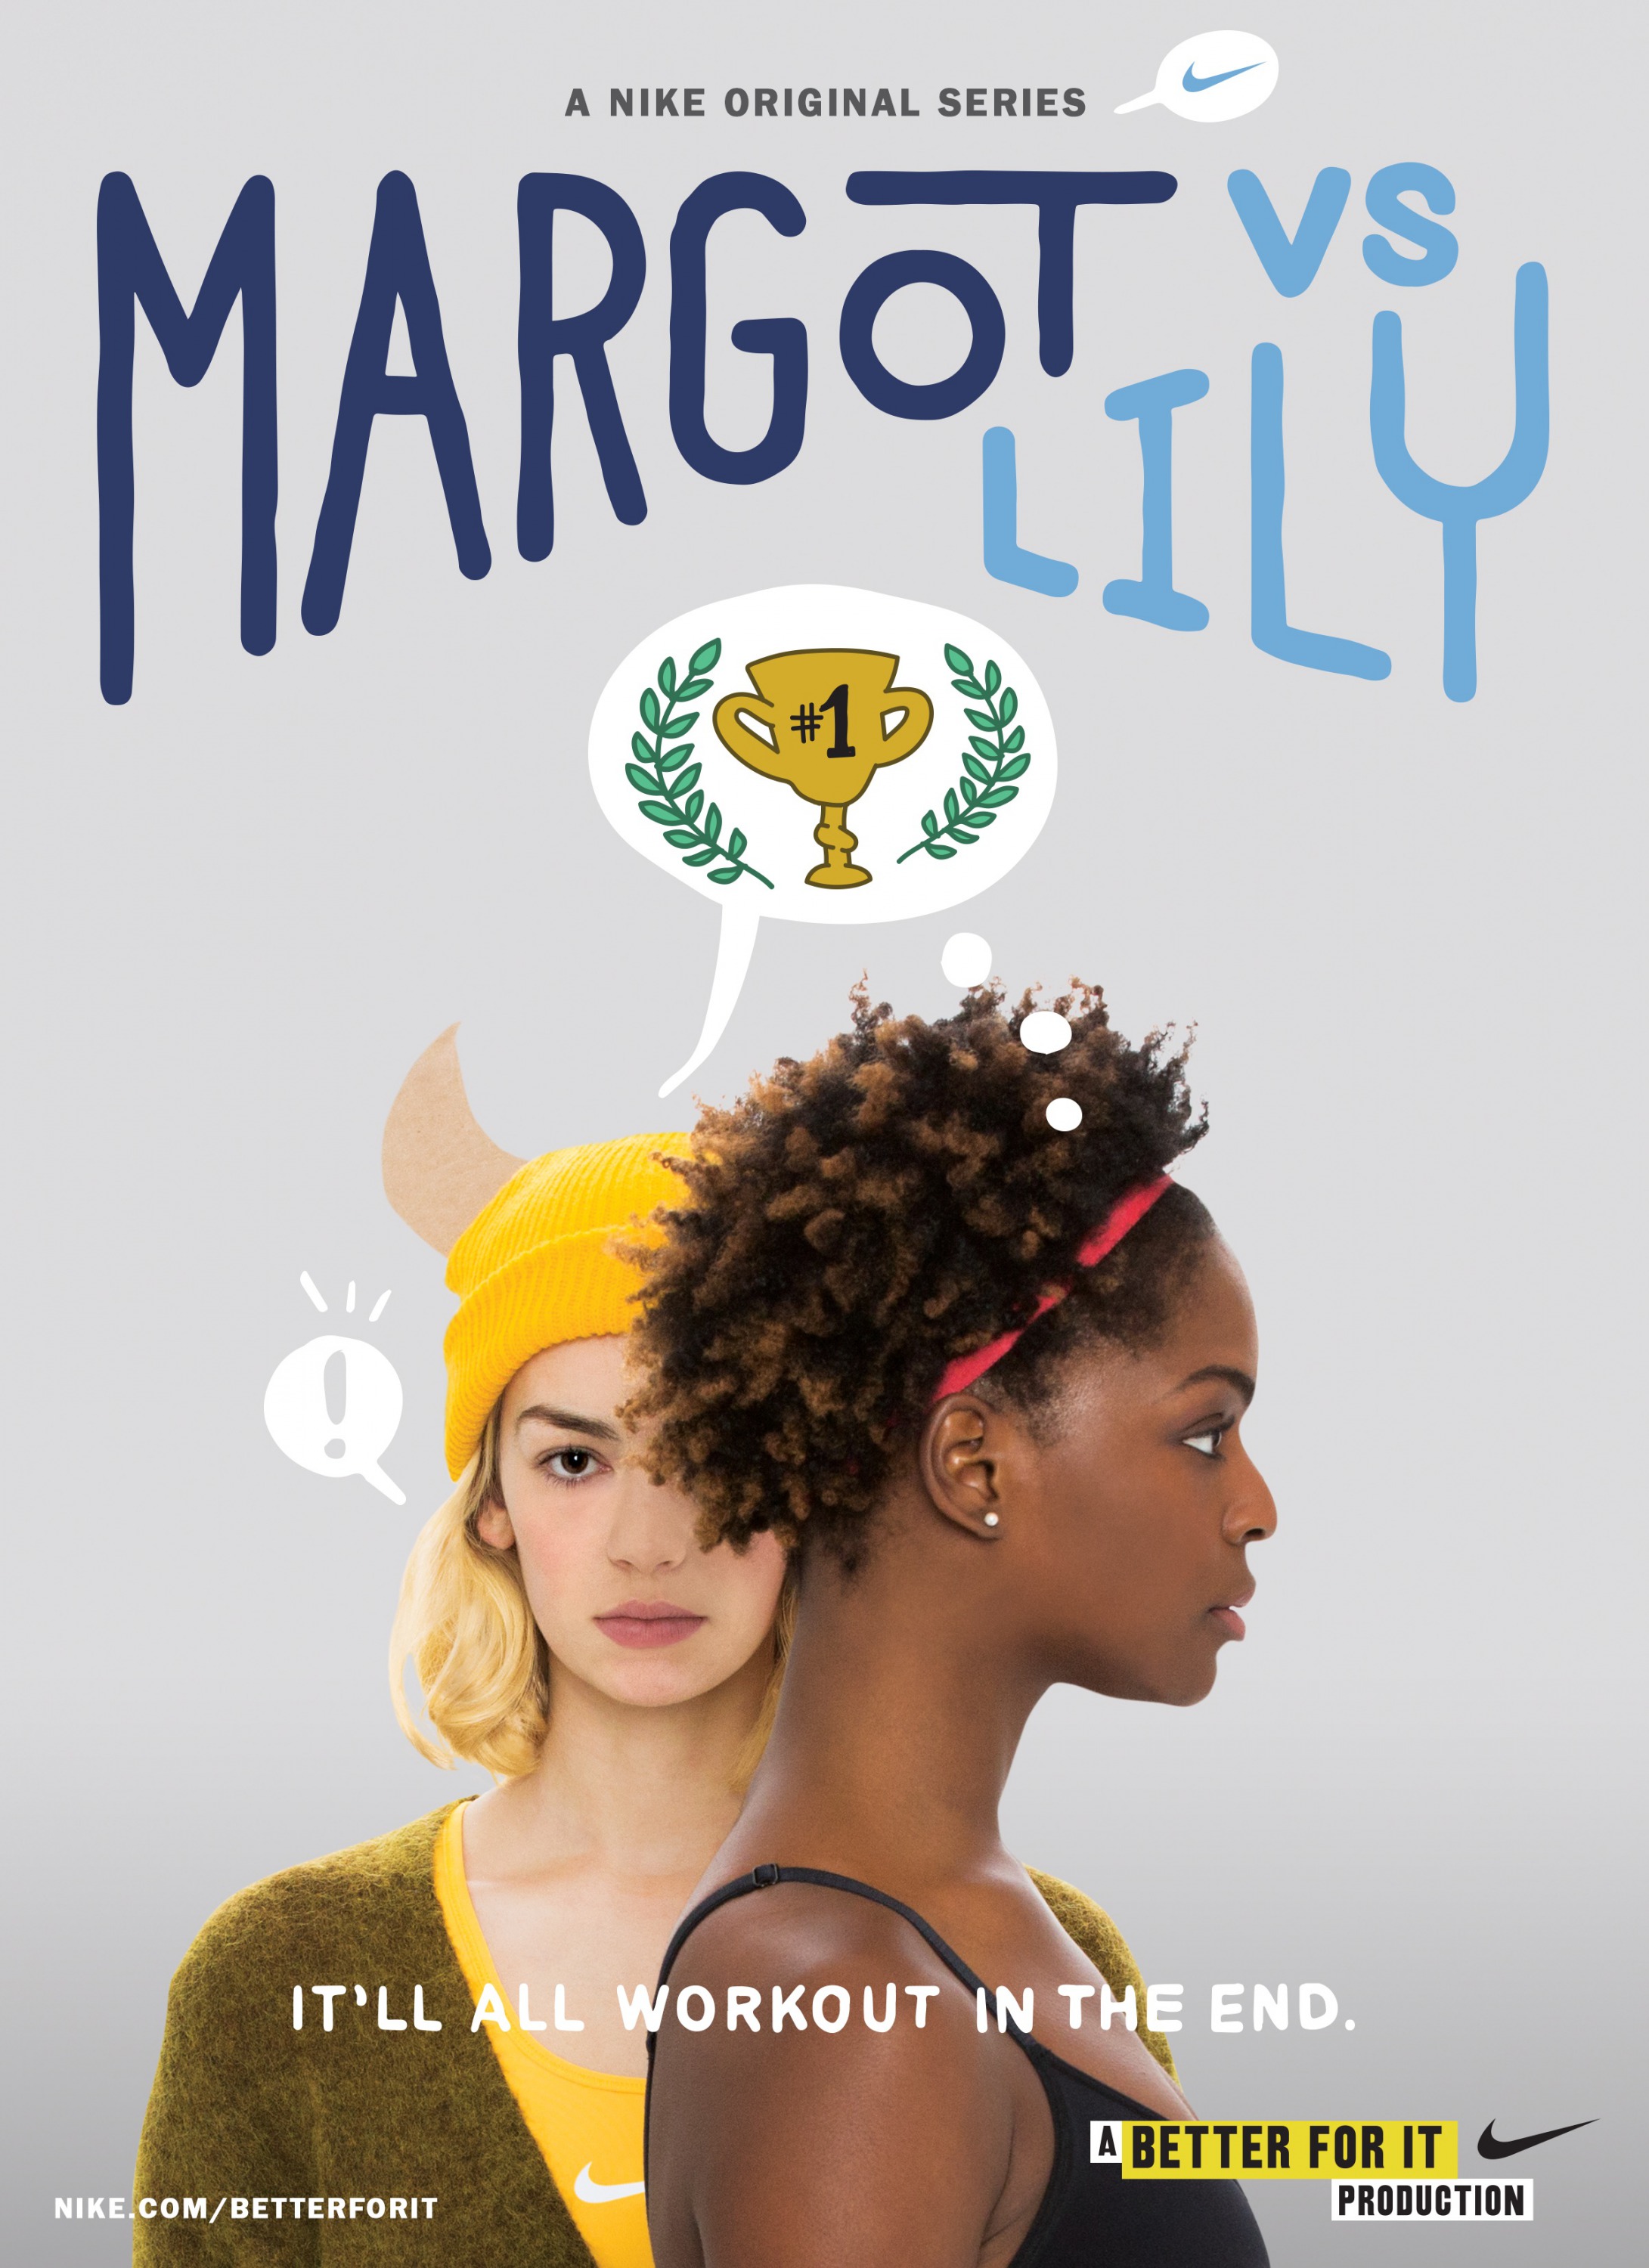 Mega Sized TV Poster Image for Margot vs. Lily 